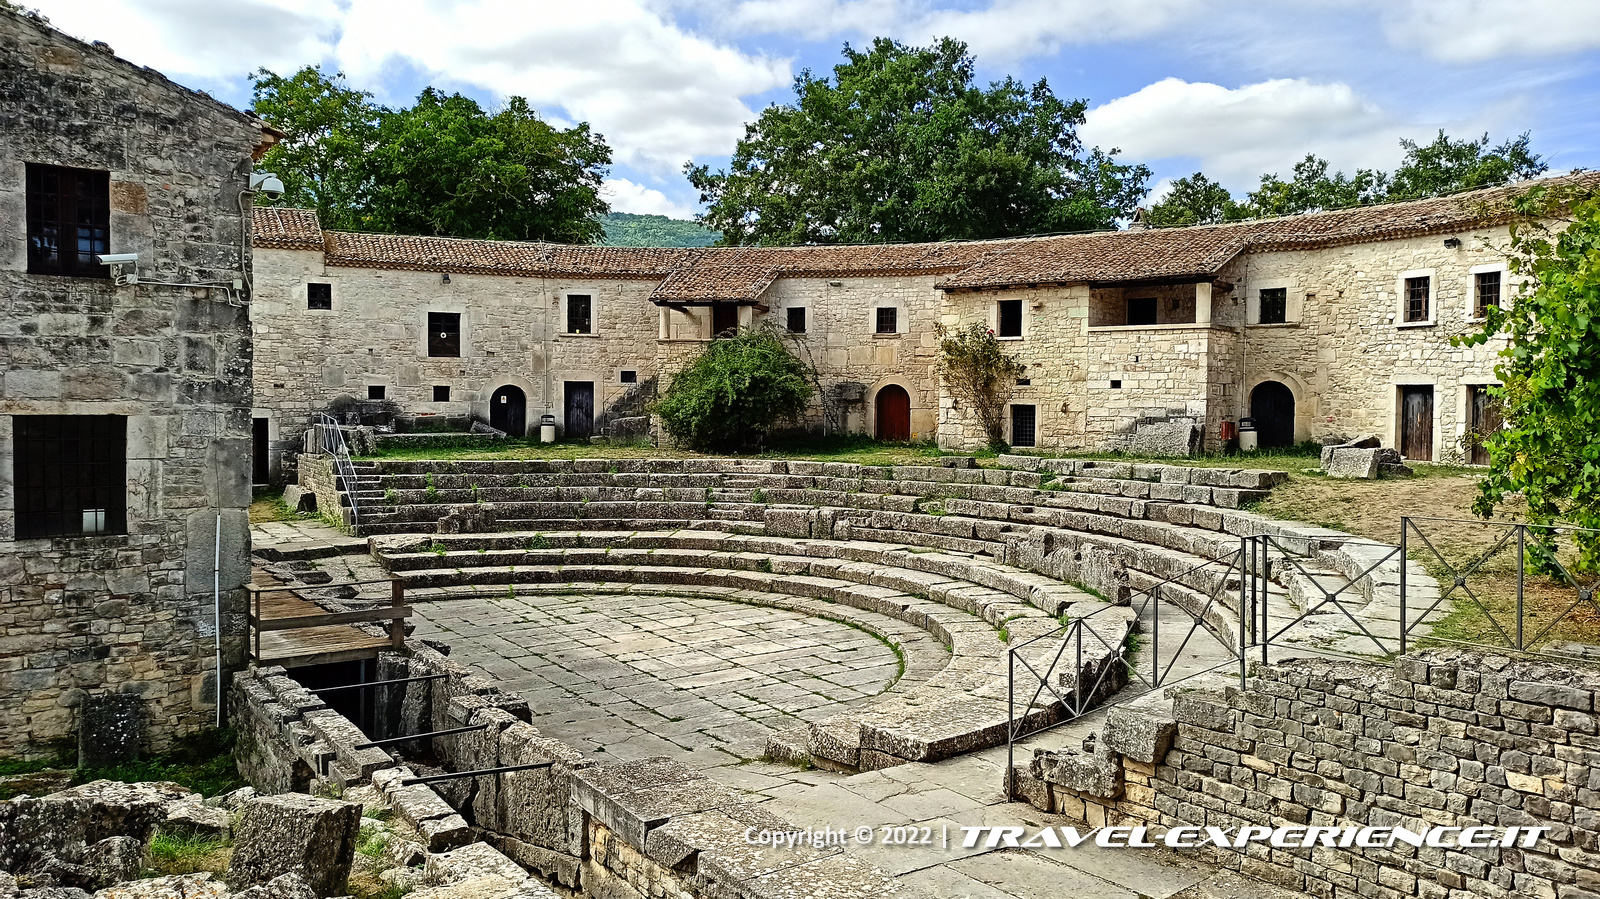 Teatro romano del sito archeologico di Altilia-Saepinum, Sepino